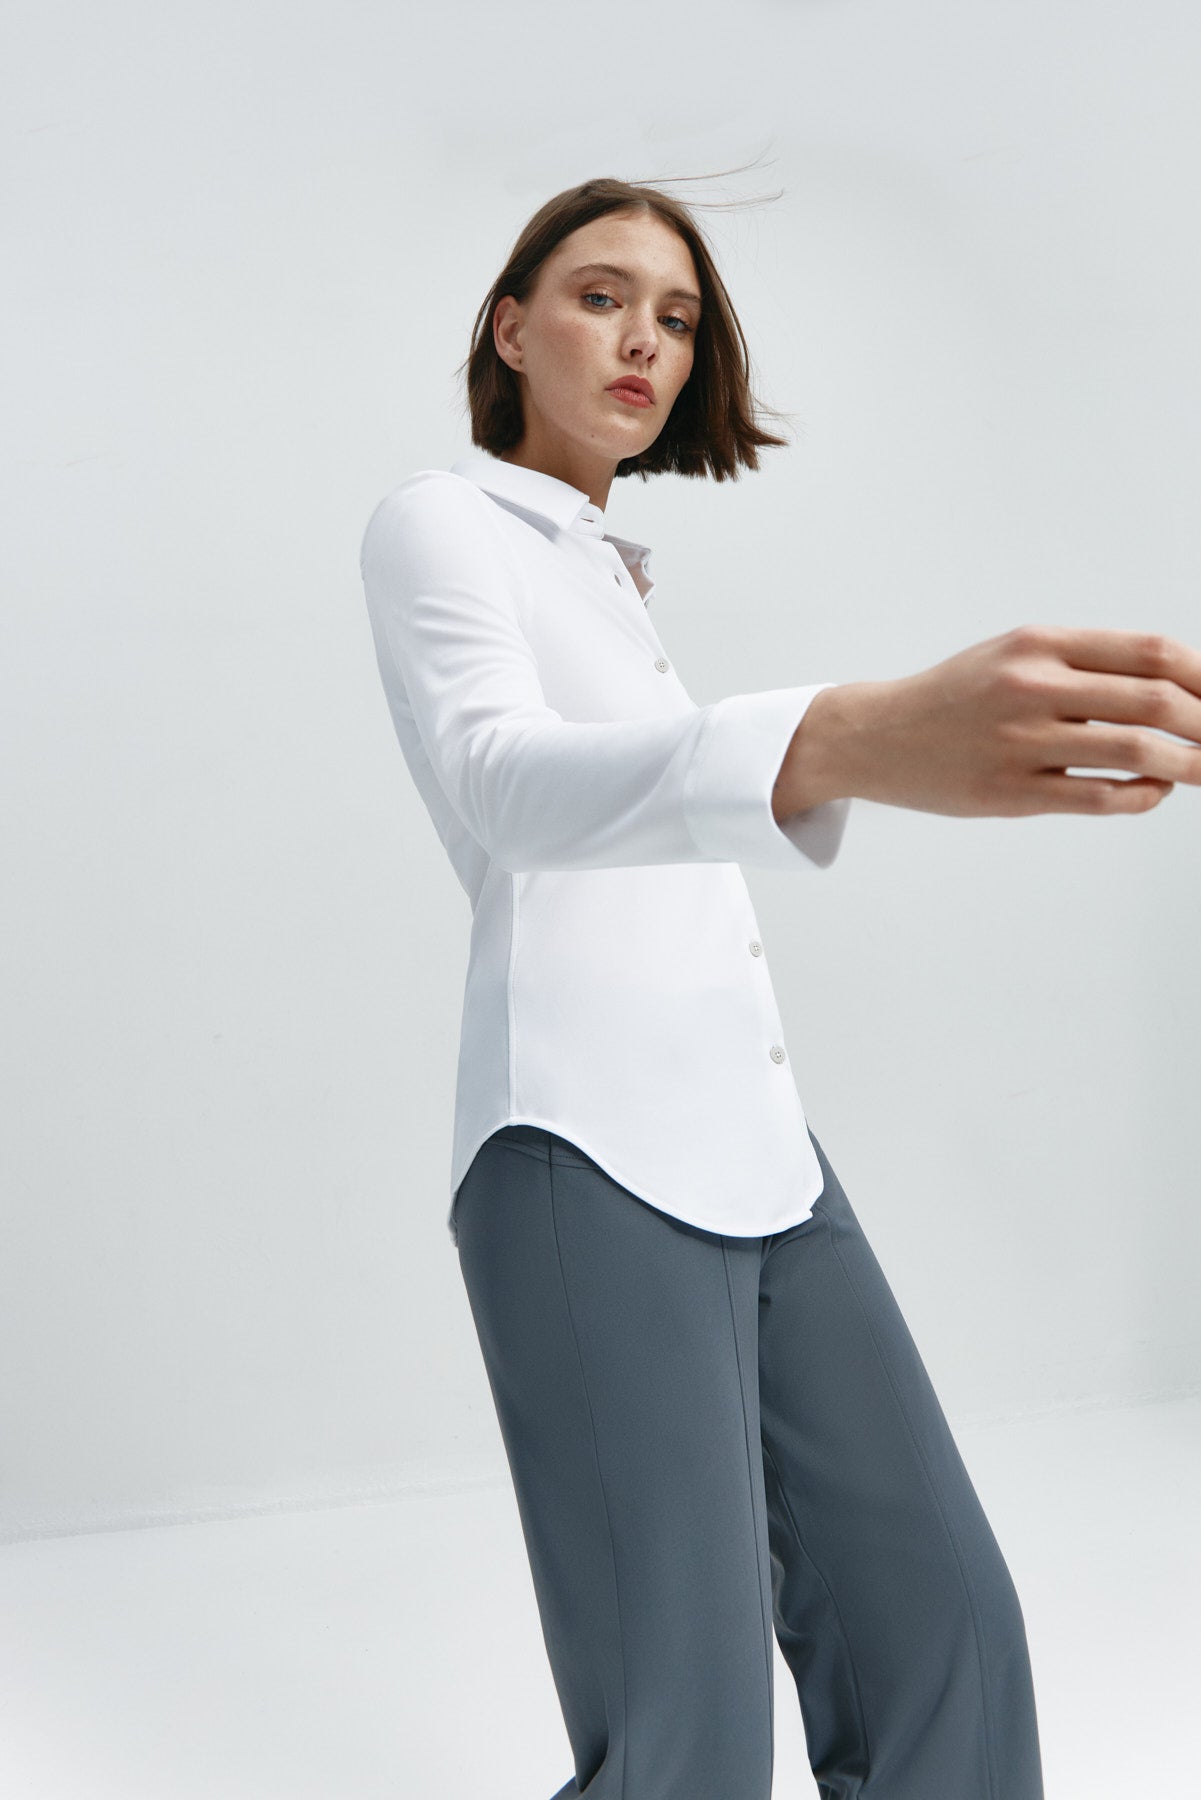  Camisa para mujer slim color blanco, básica y versátil. Foto flexibilidad